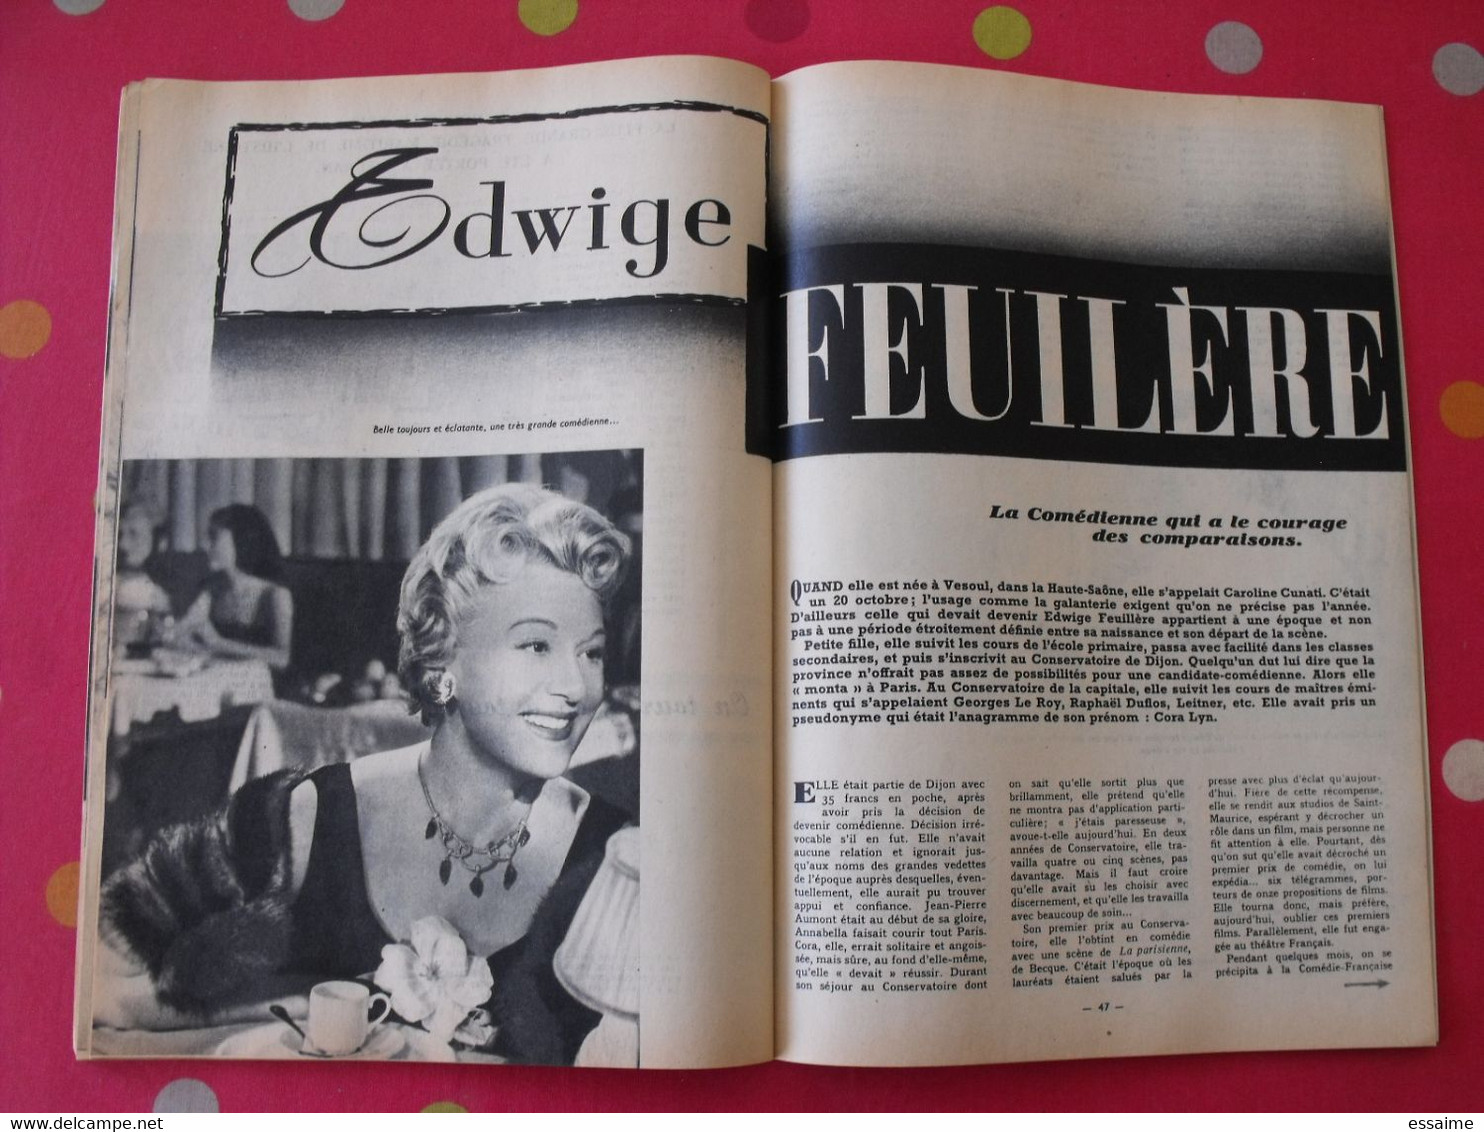 revue Jeunesse cinéma n° 15 de 1959. christine carrère rock hudson agnès laurent leslie caron gina lollobrigida (poster)